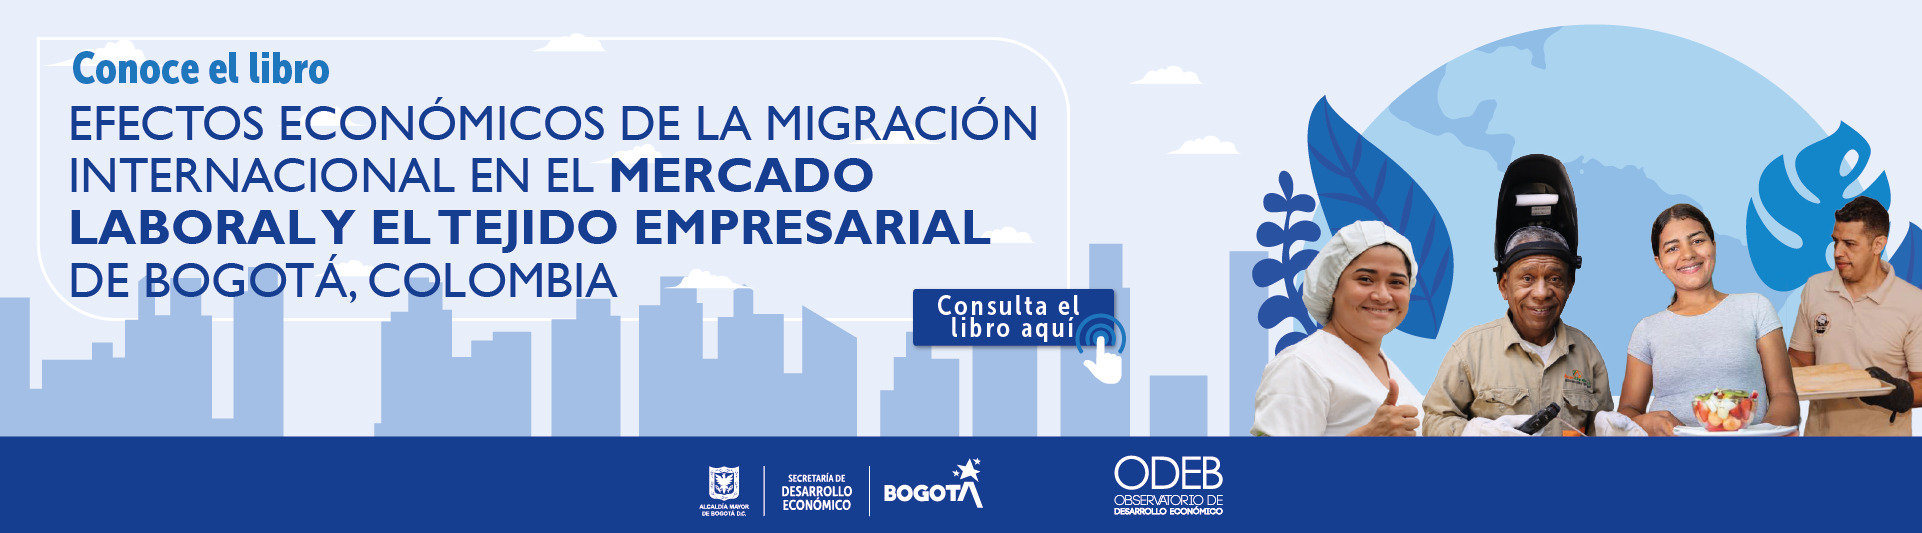 Efectos económicos de la migración internacional en el mercado laboral y el tejido empresarial de Bogotá, Colombia